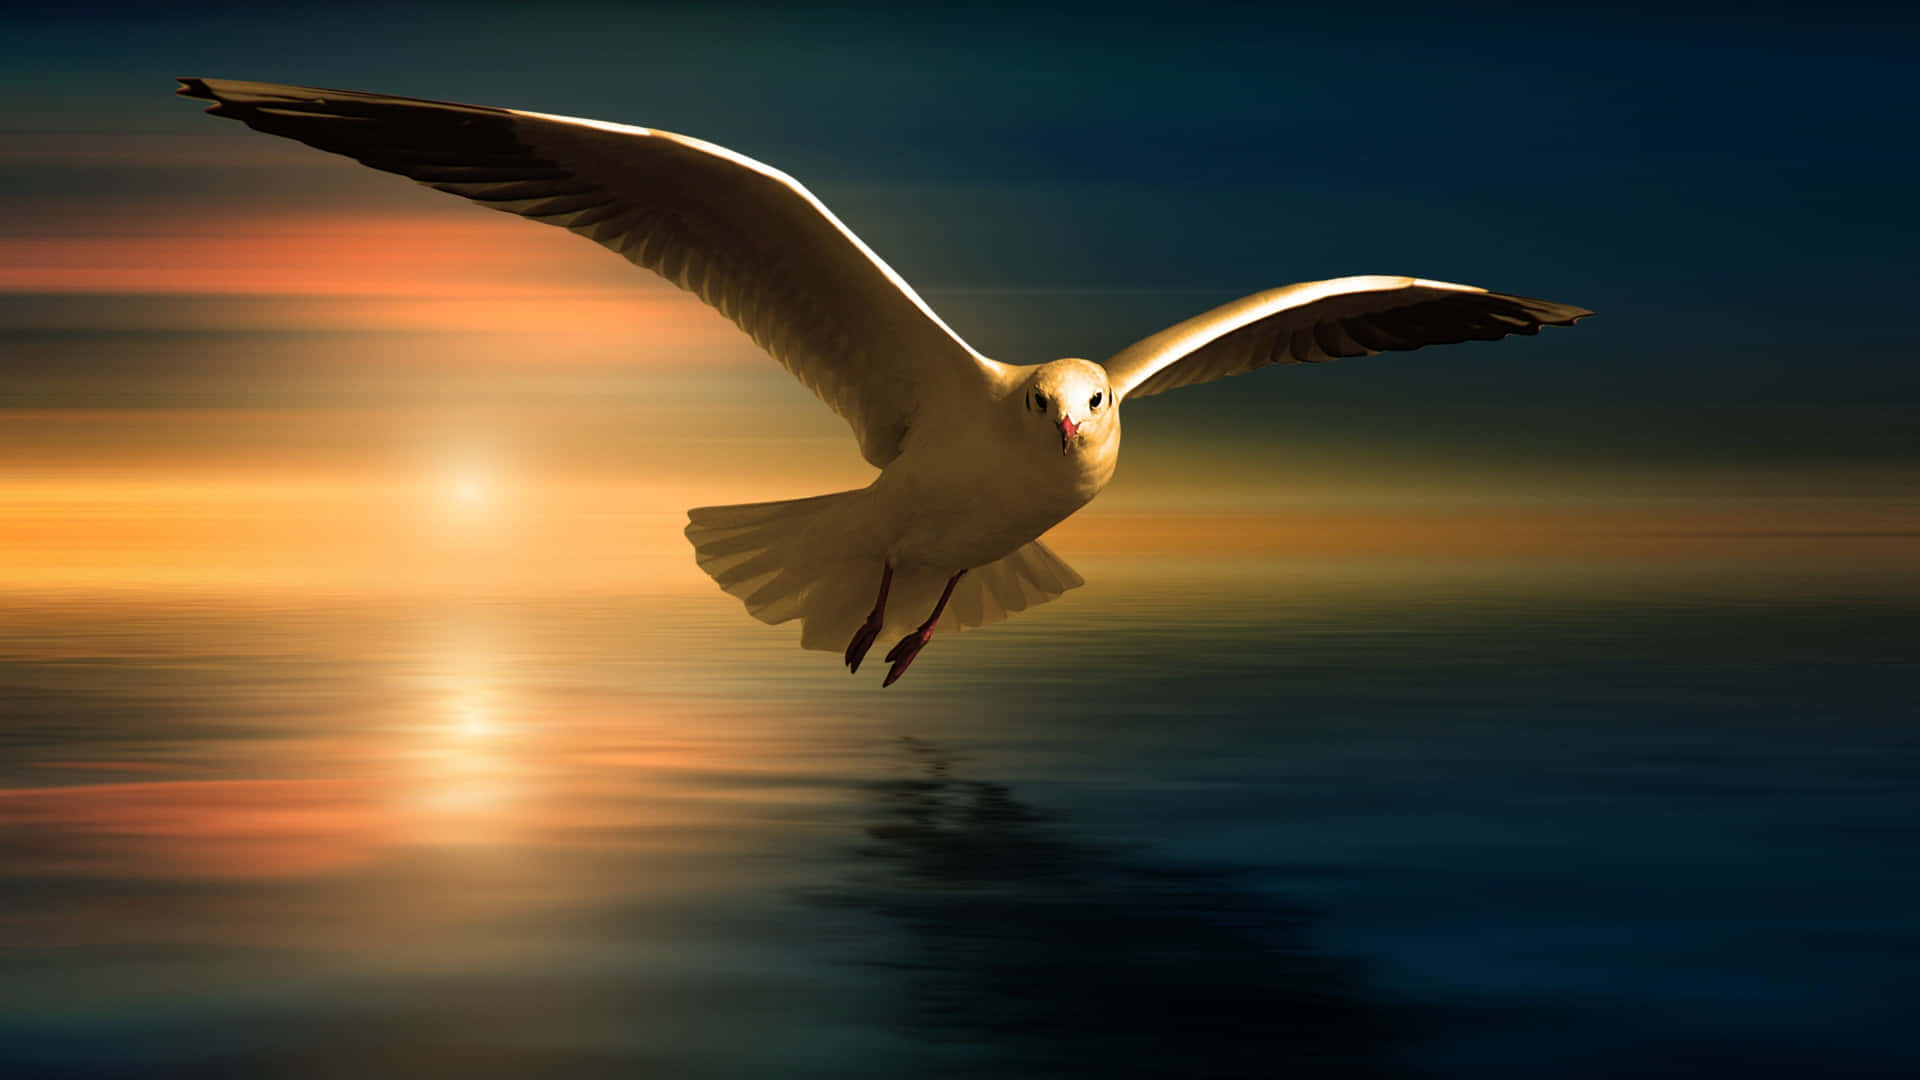 Graceful Seagull in Flight Wallpaper